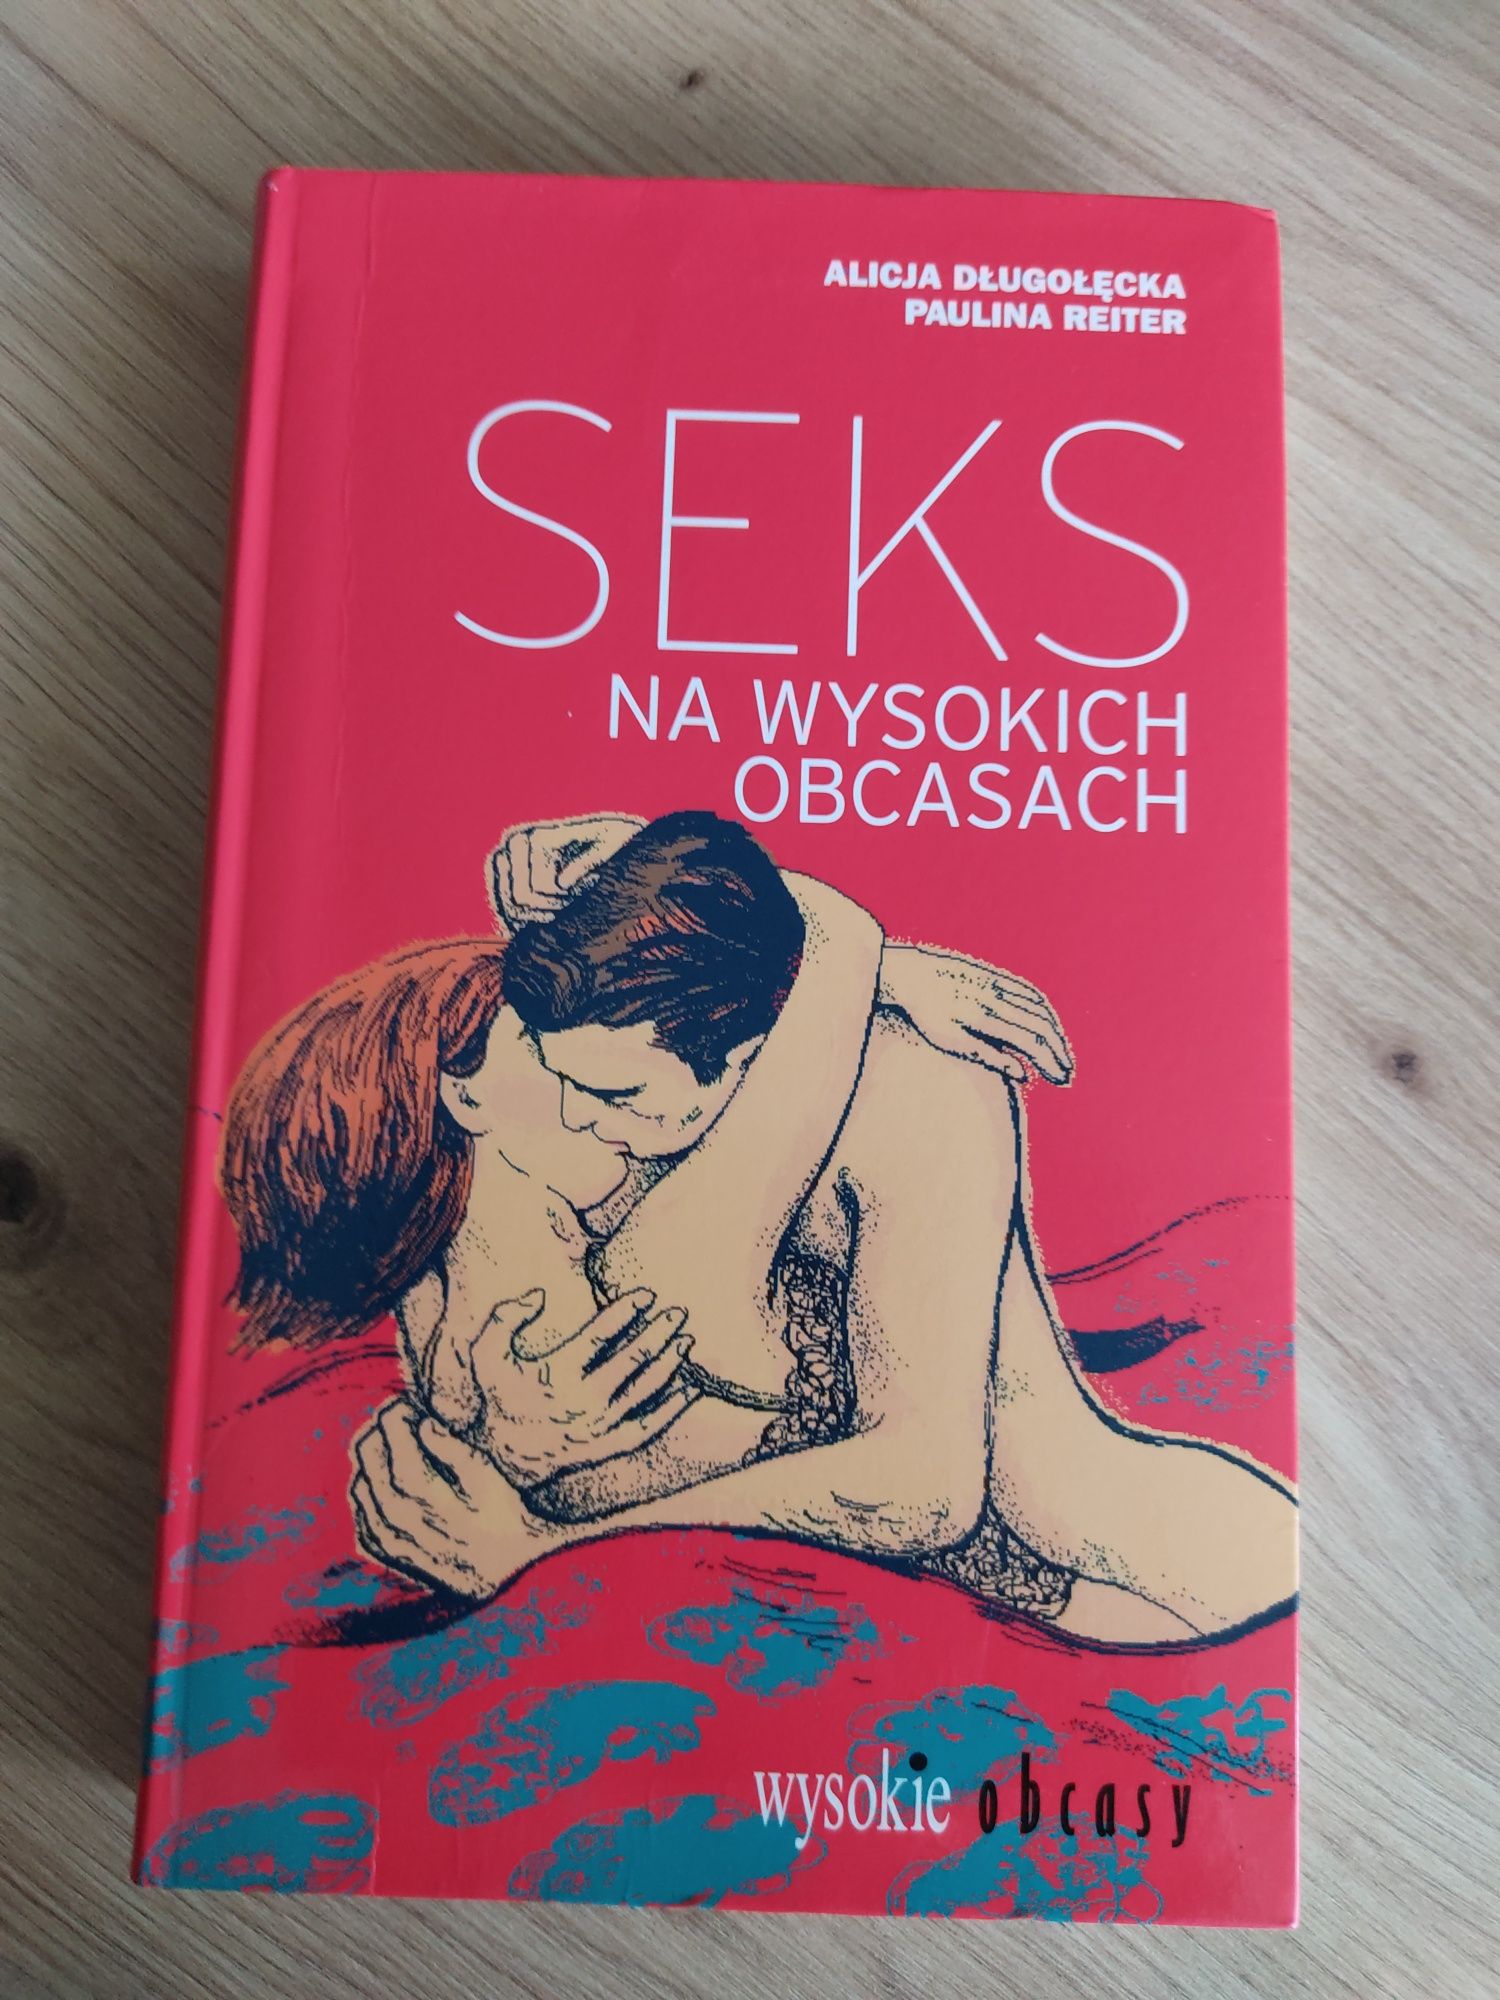 Książka "Sex na wysokich obcasach" A.Długołęcka, P.Reiter